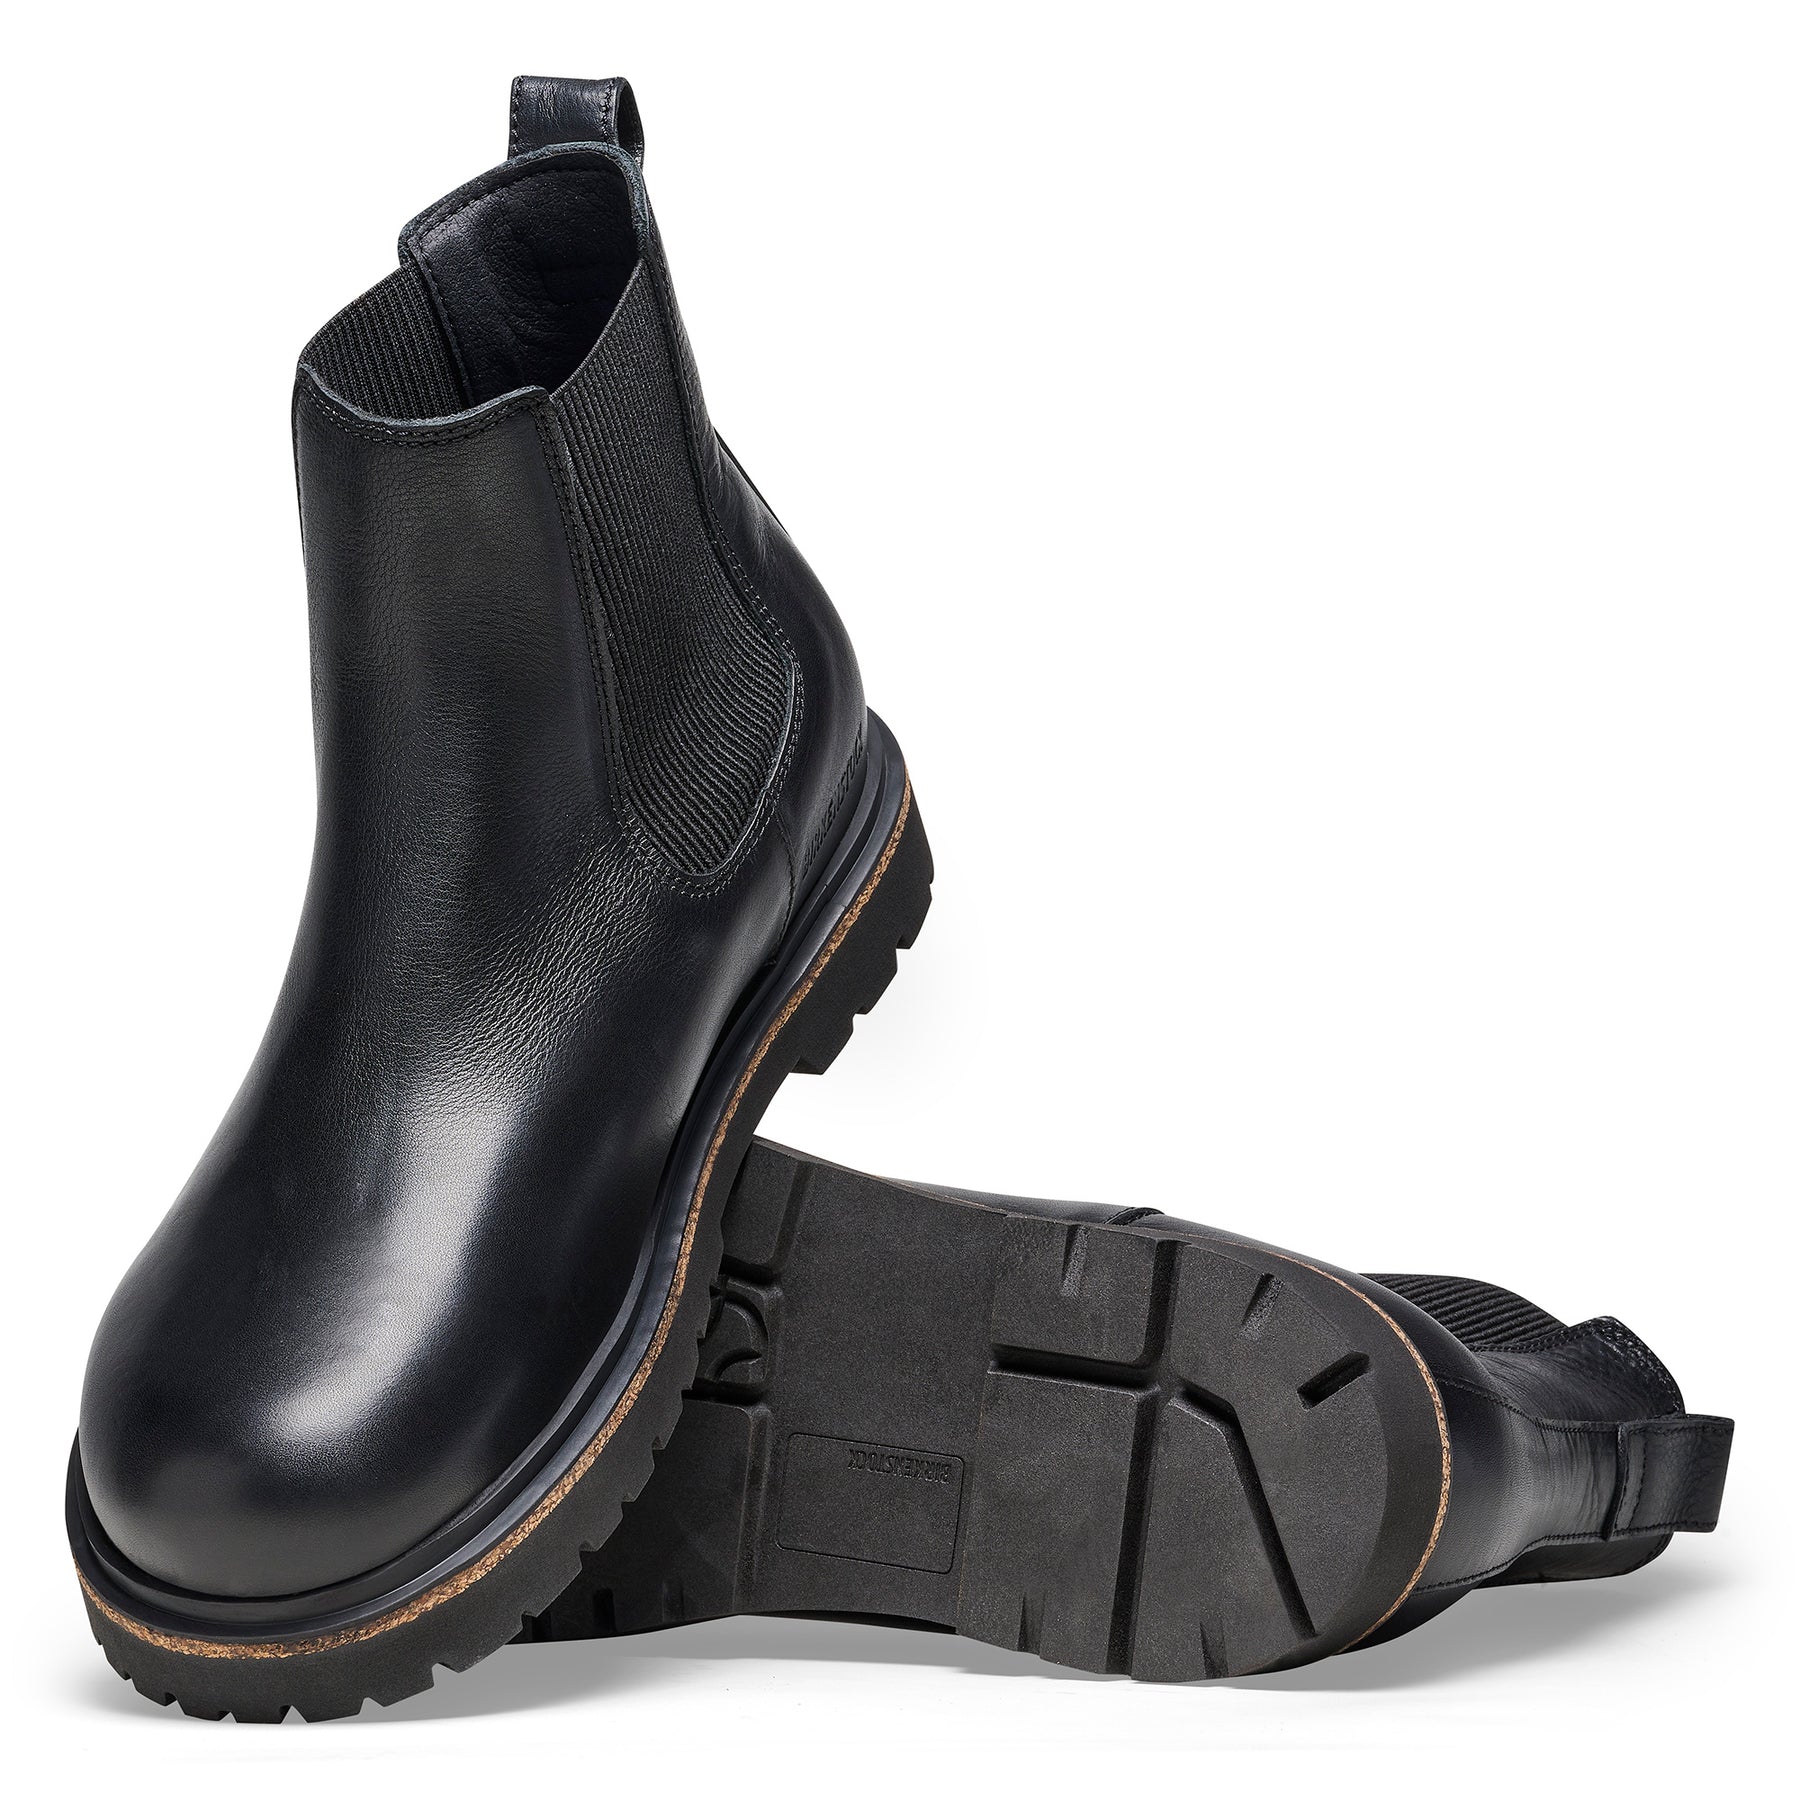 Birkenstock Limited Edition Men's Highwood black leather